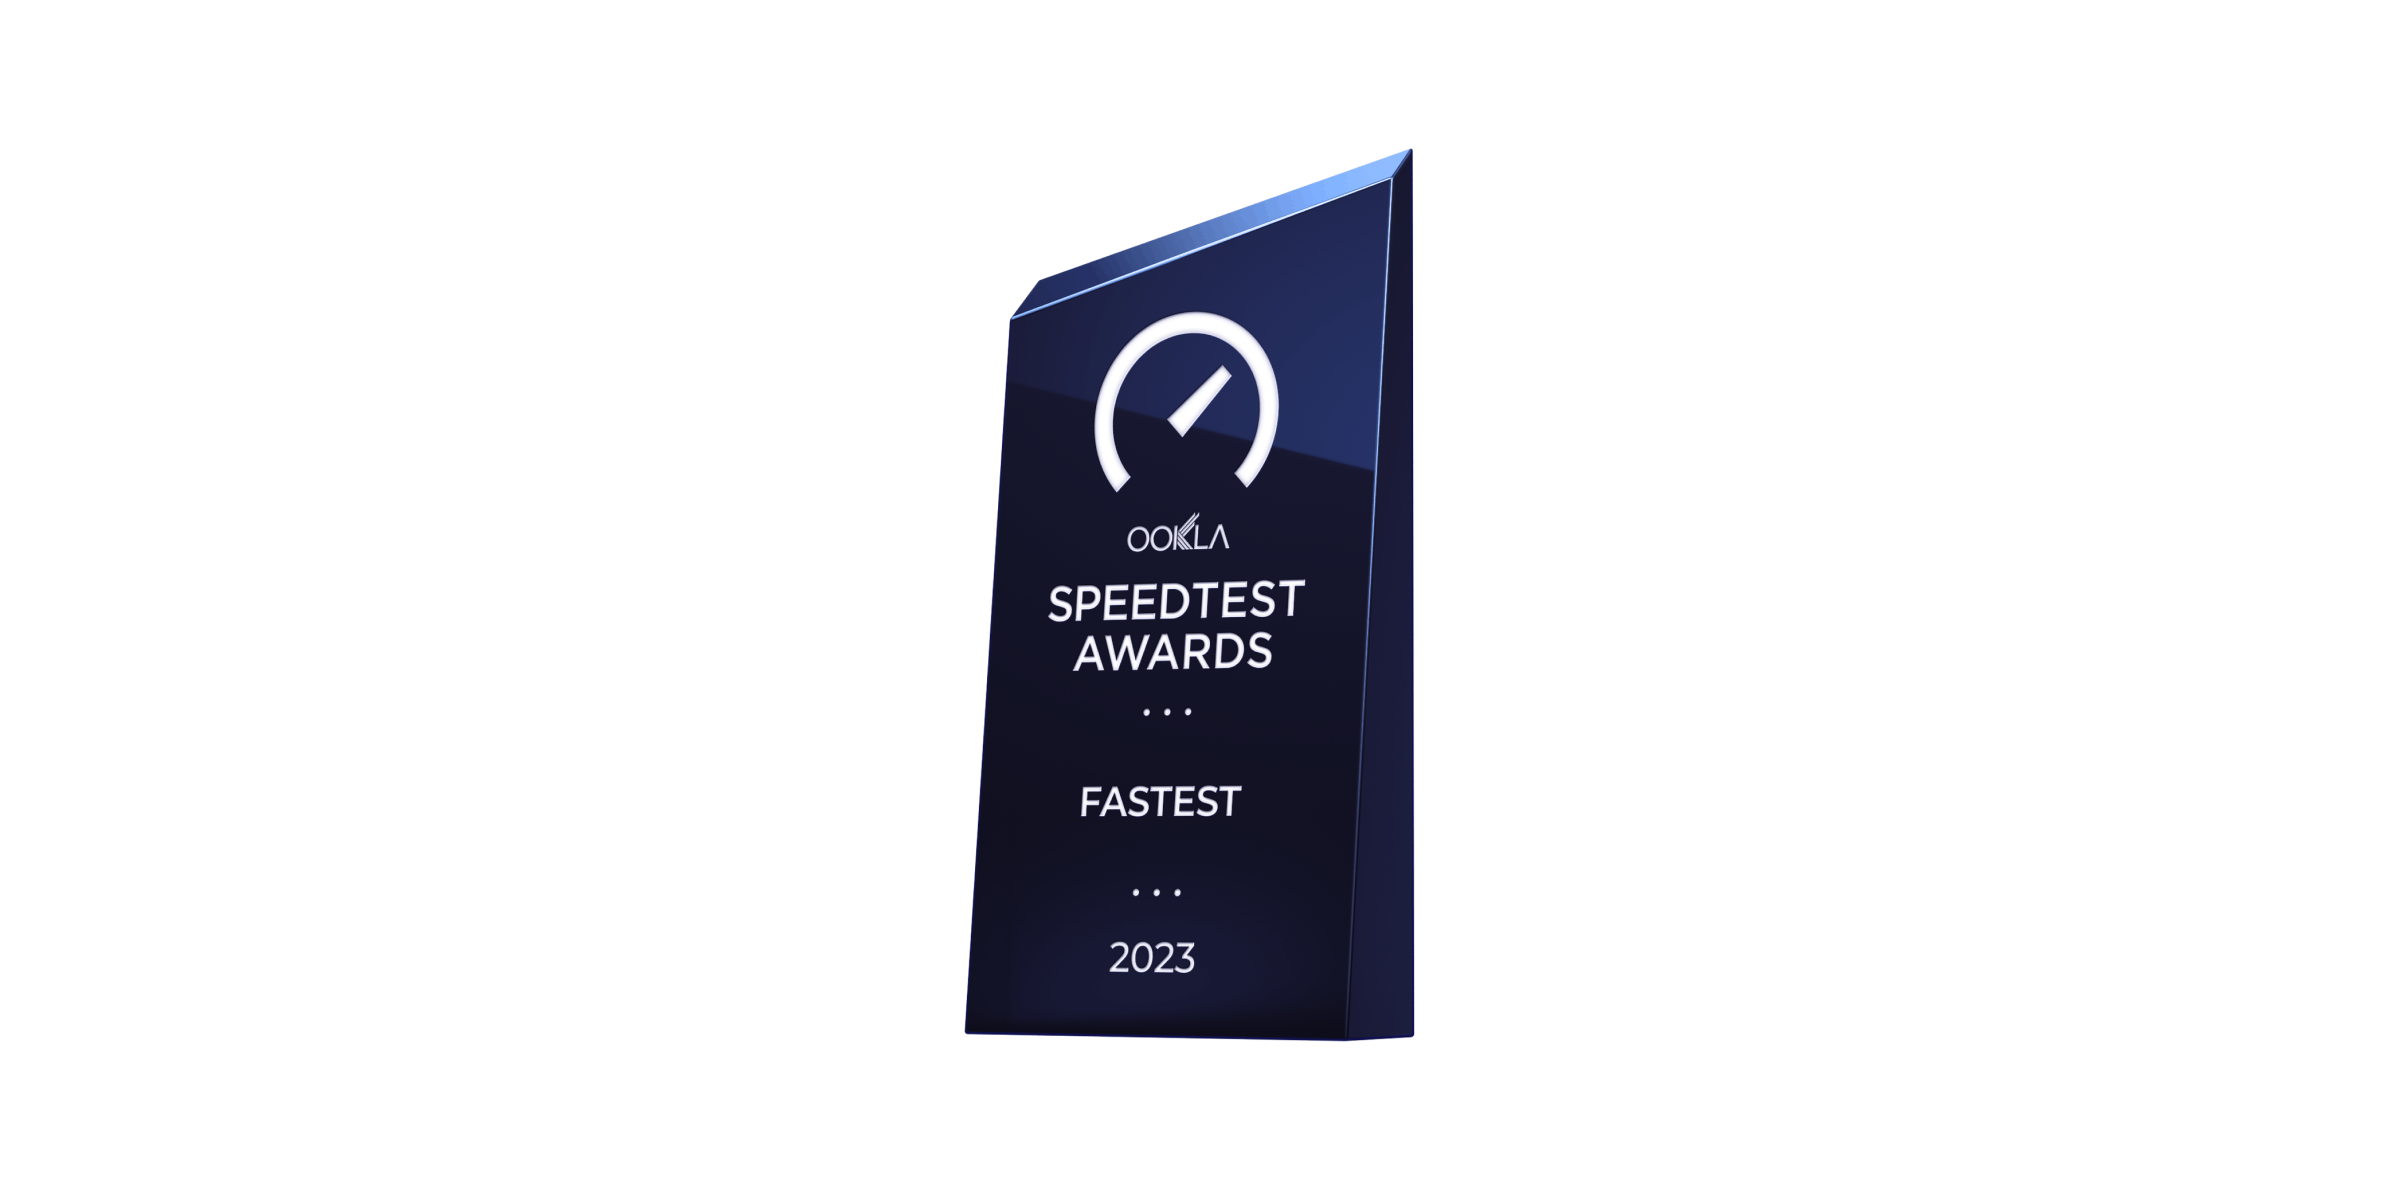 Speedtest awards: fastest 2023